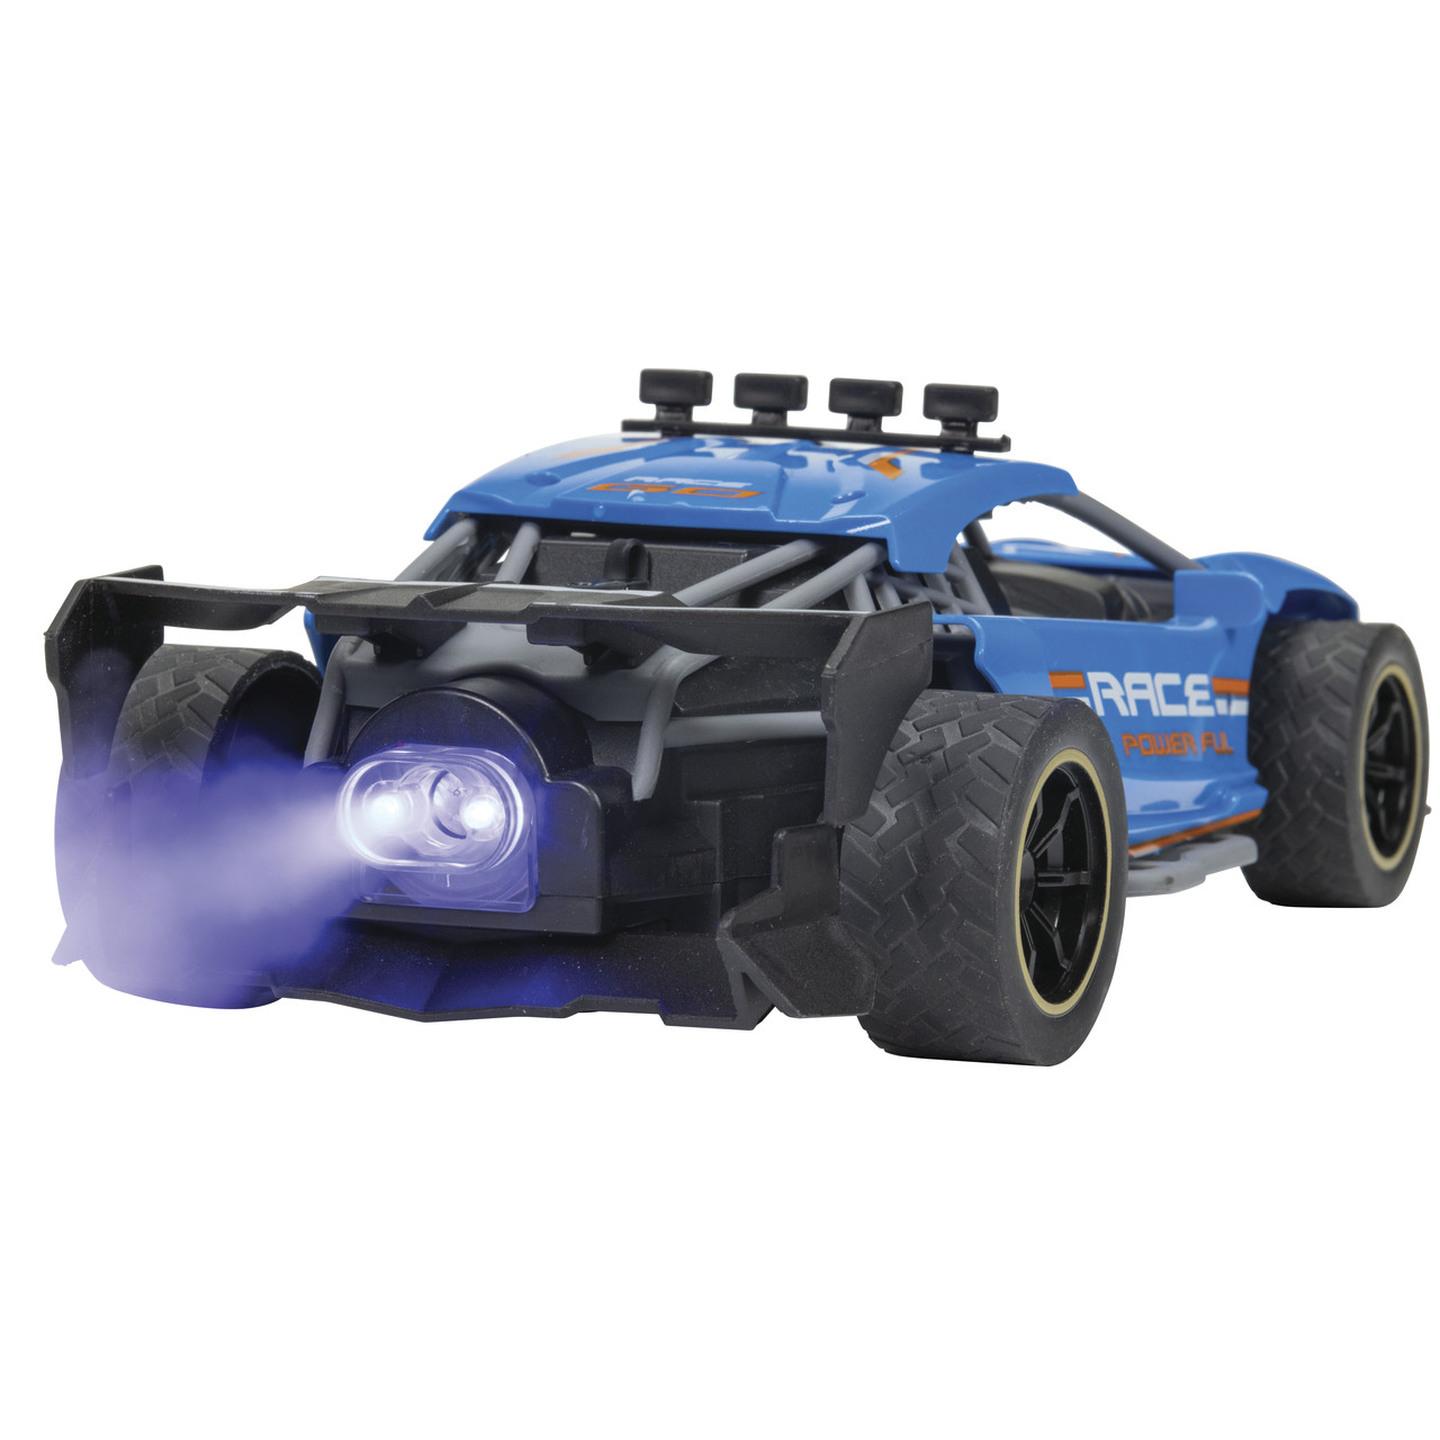 1:20 Scale R/C Race Car with Smoke Spray